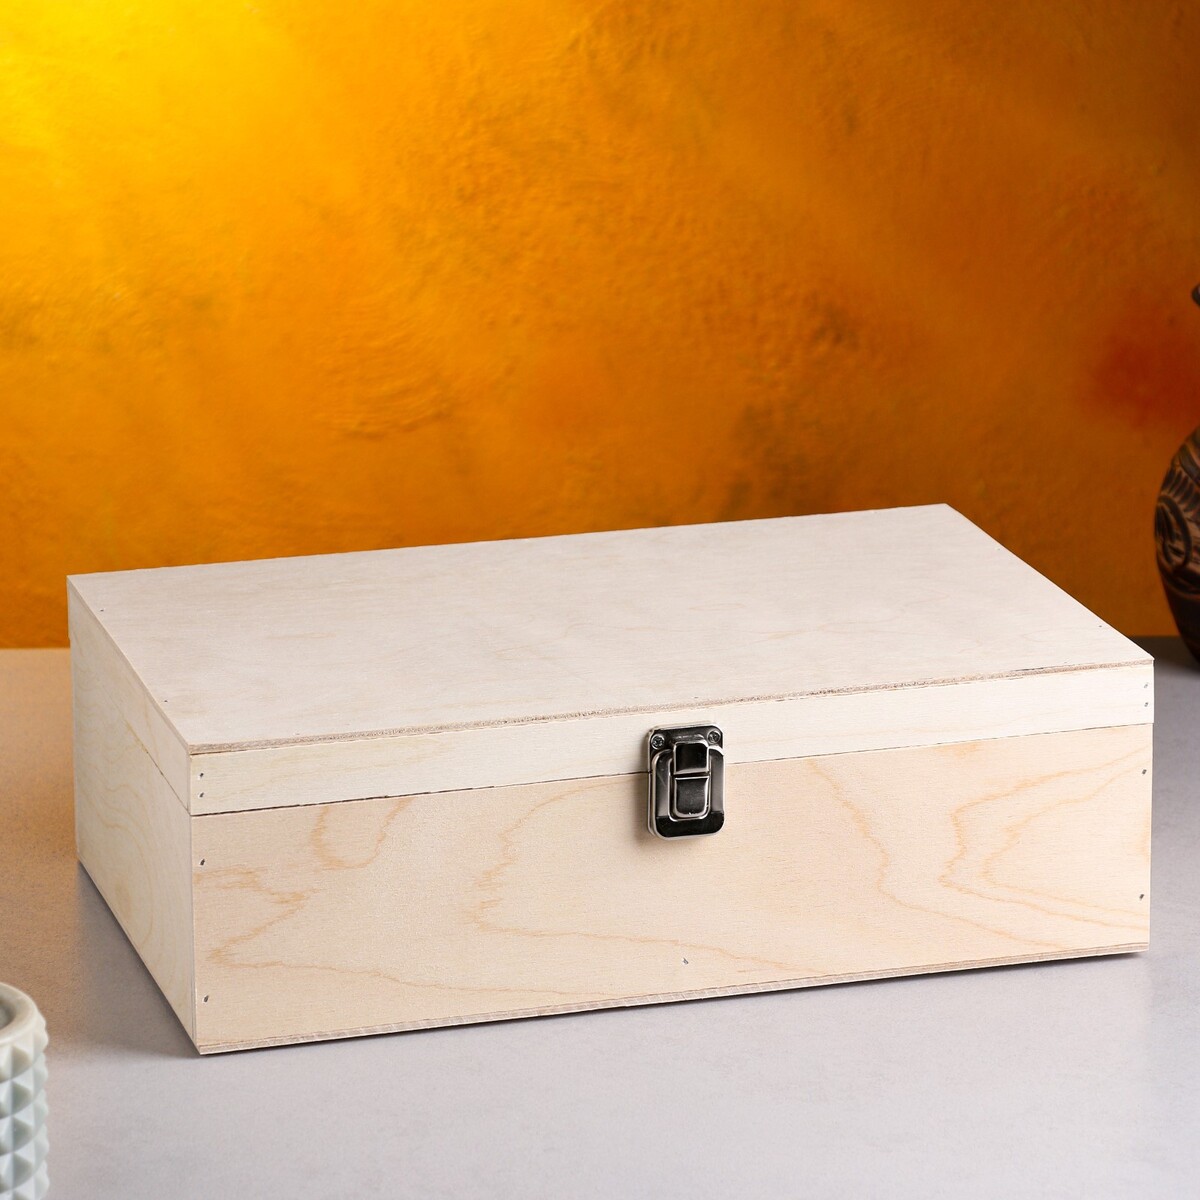 Подарочный ящик 34×21.5×10.5 см деревянный, с закрывающейся крышкой, без покраски